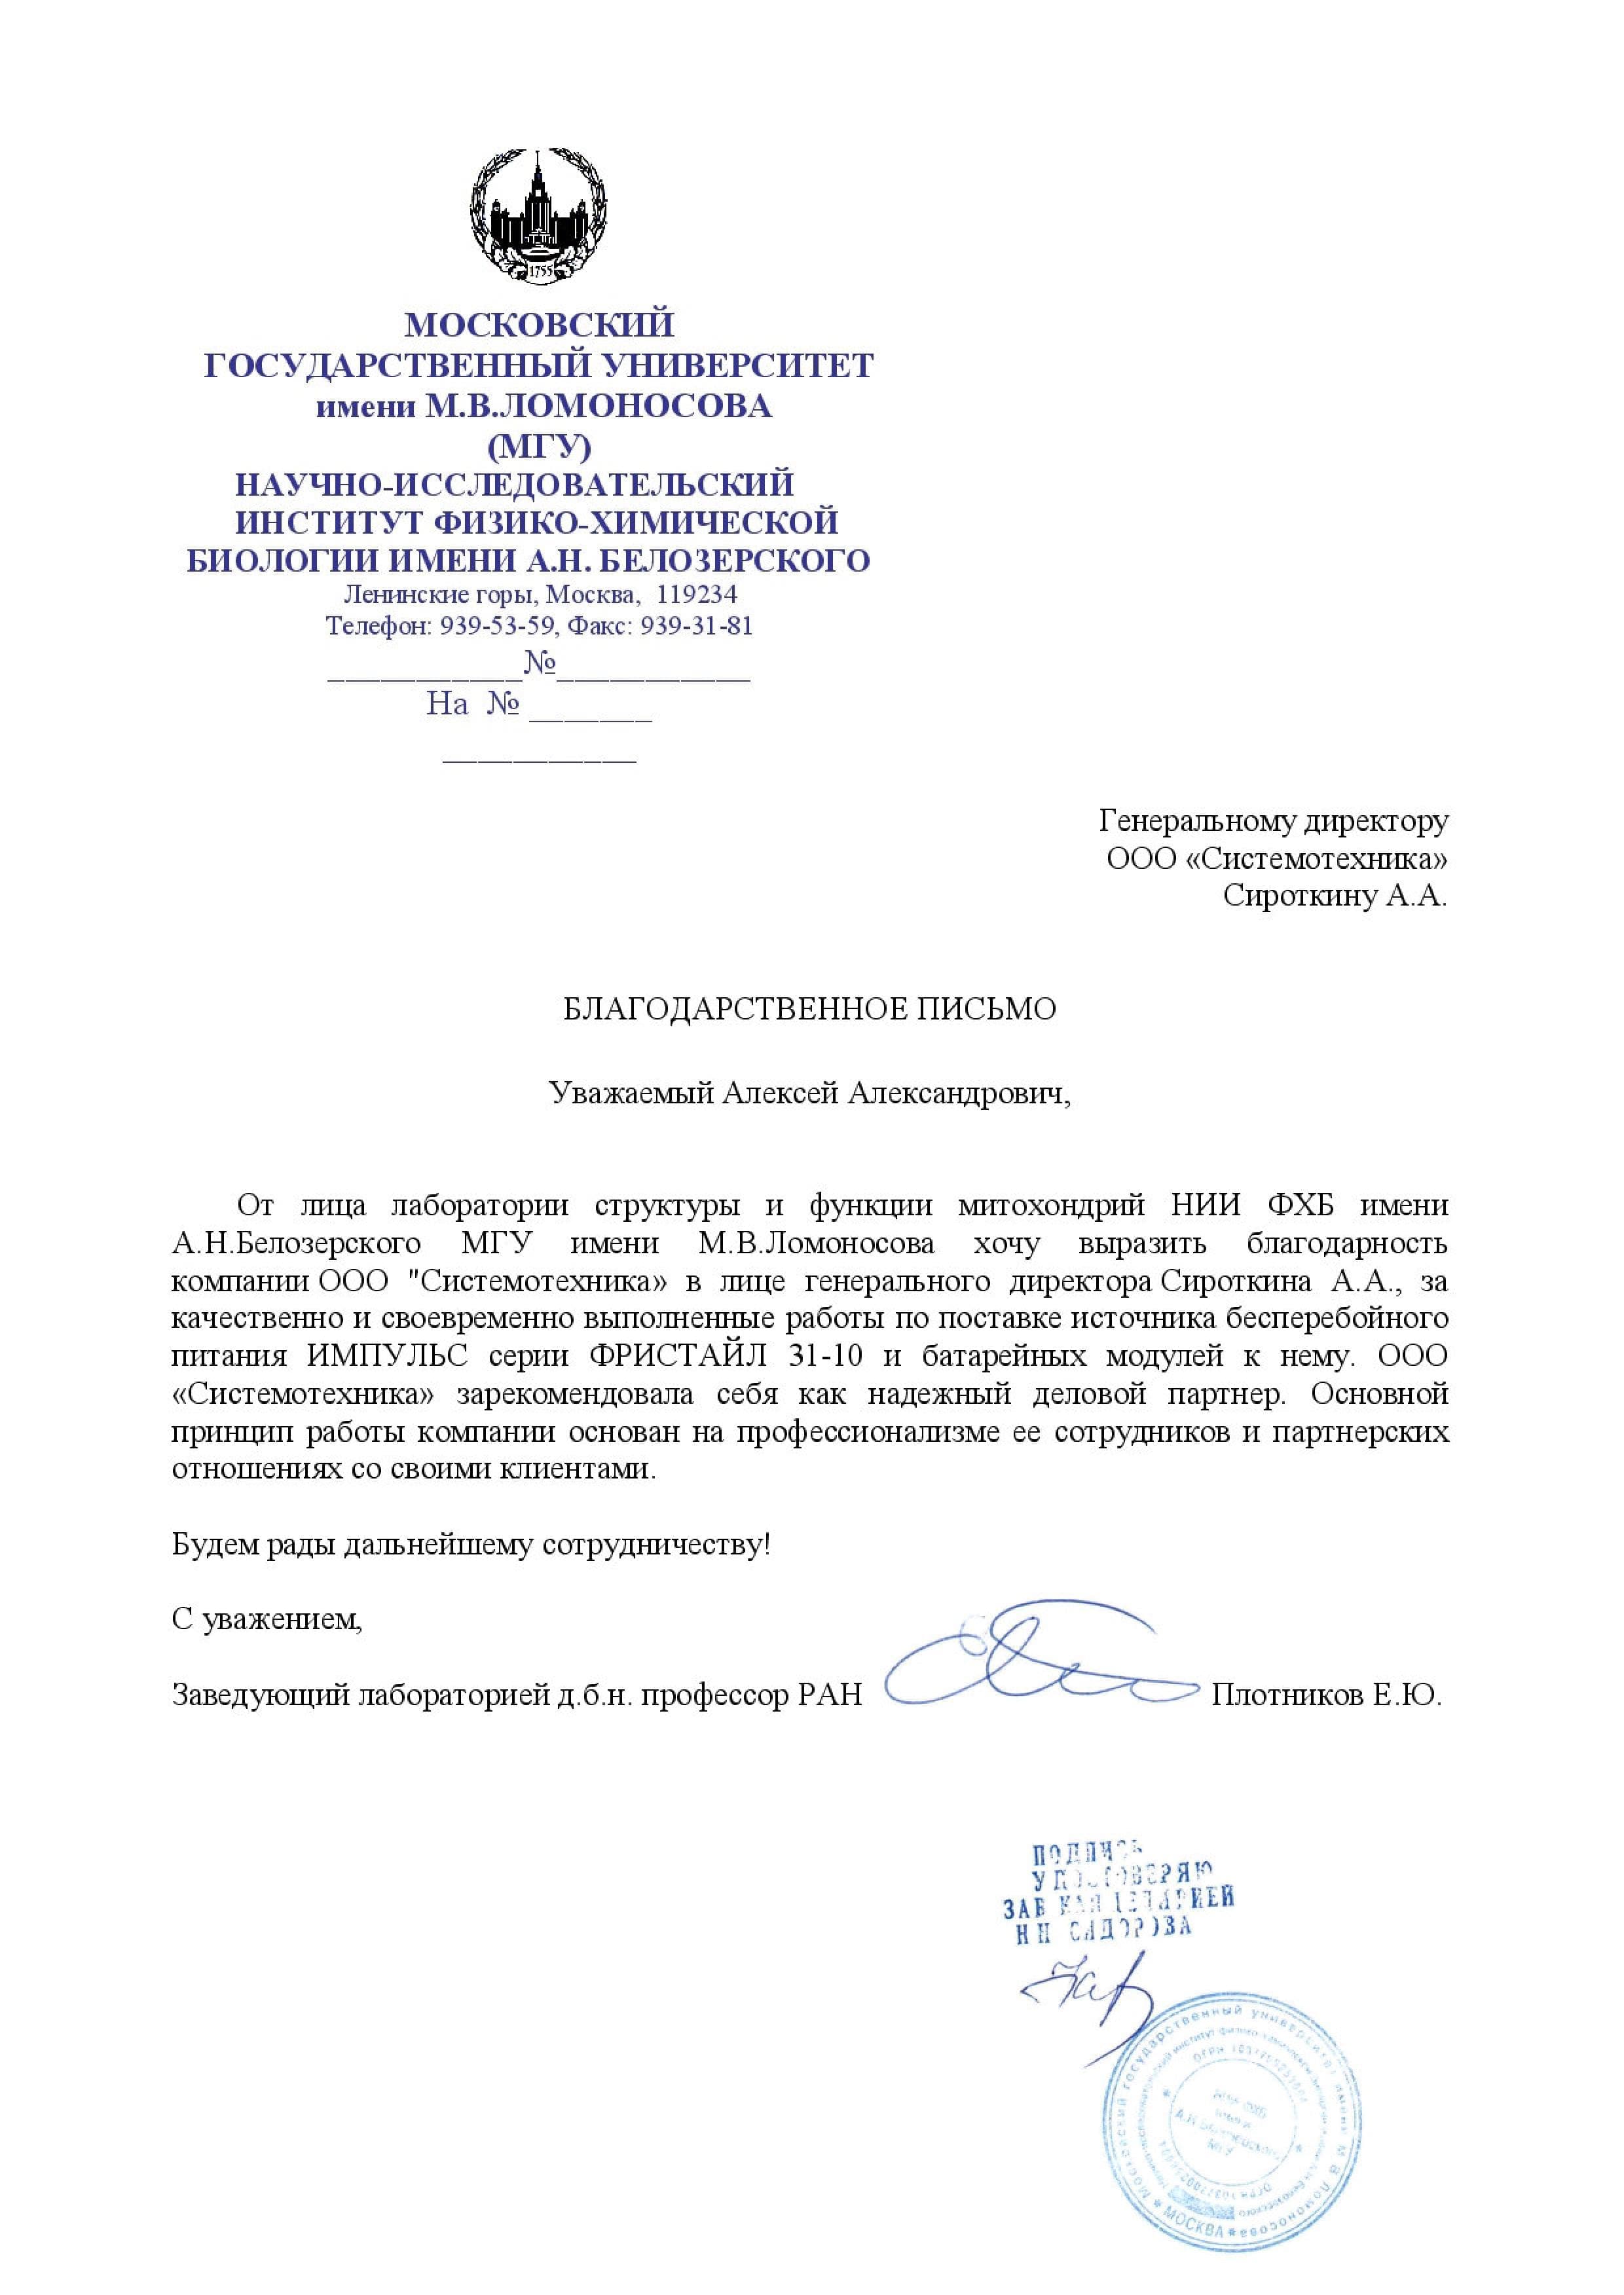 Благодарственное письмо НИИ ФХБ имени А.Н.Белозерского